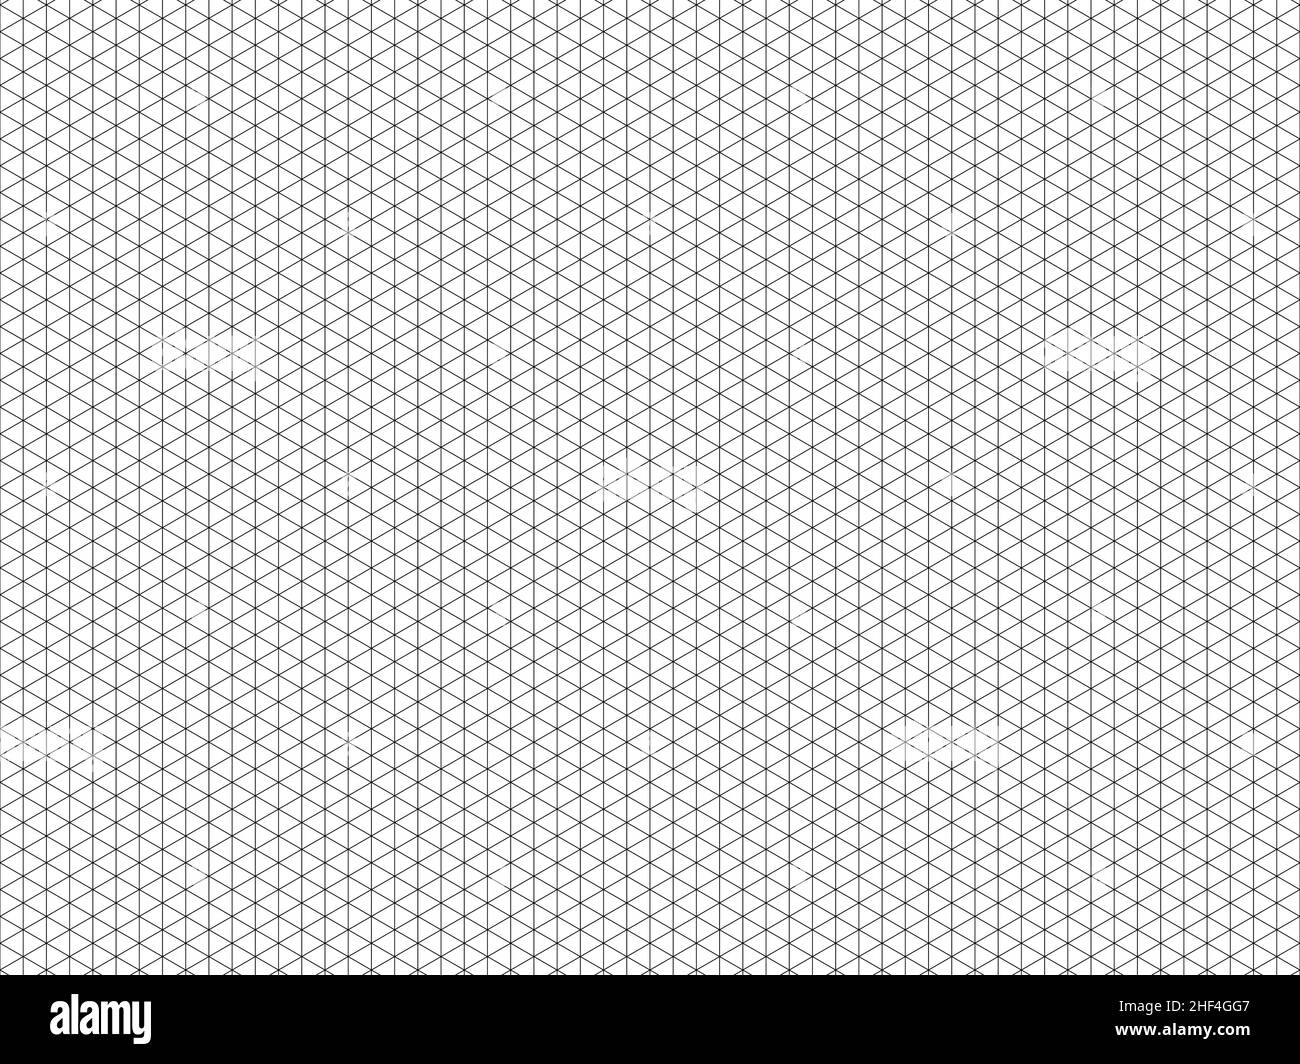 Papel milimétrico Imágenes de stock en blanco y negro - Alamy